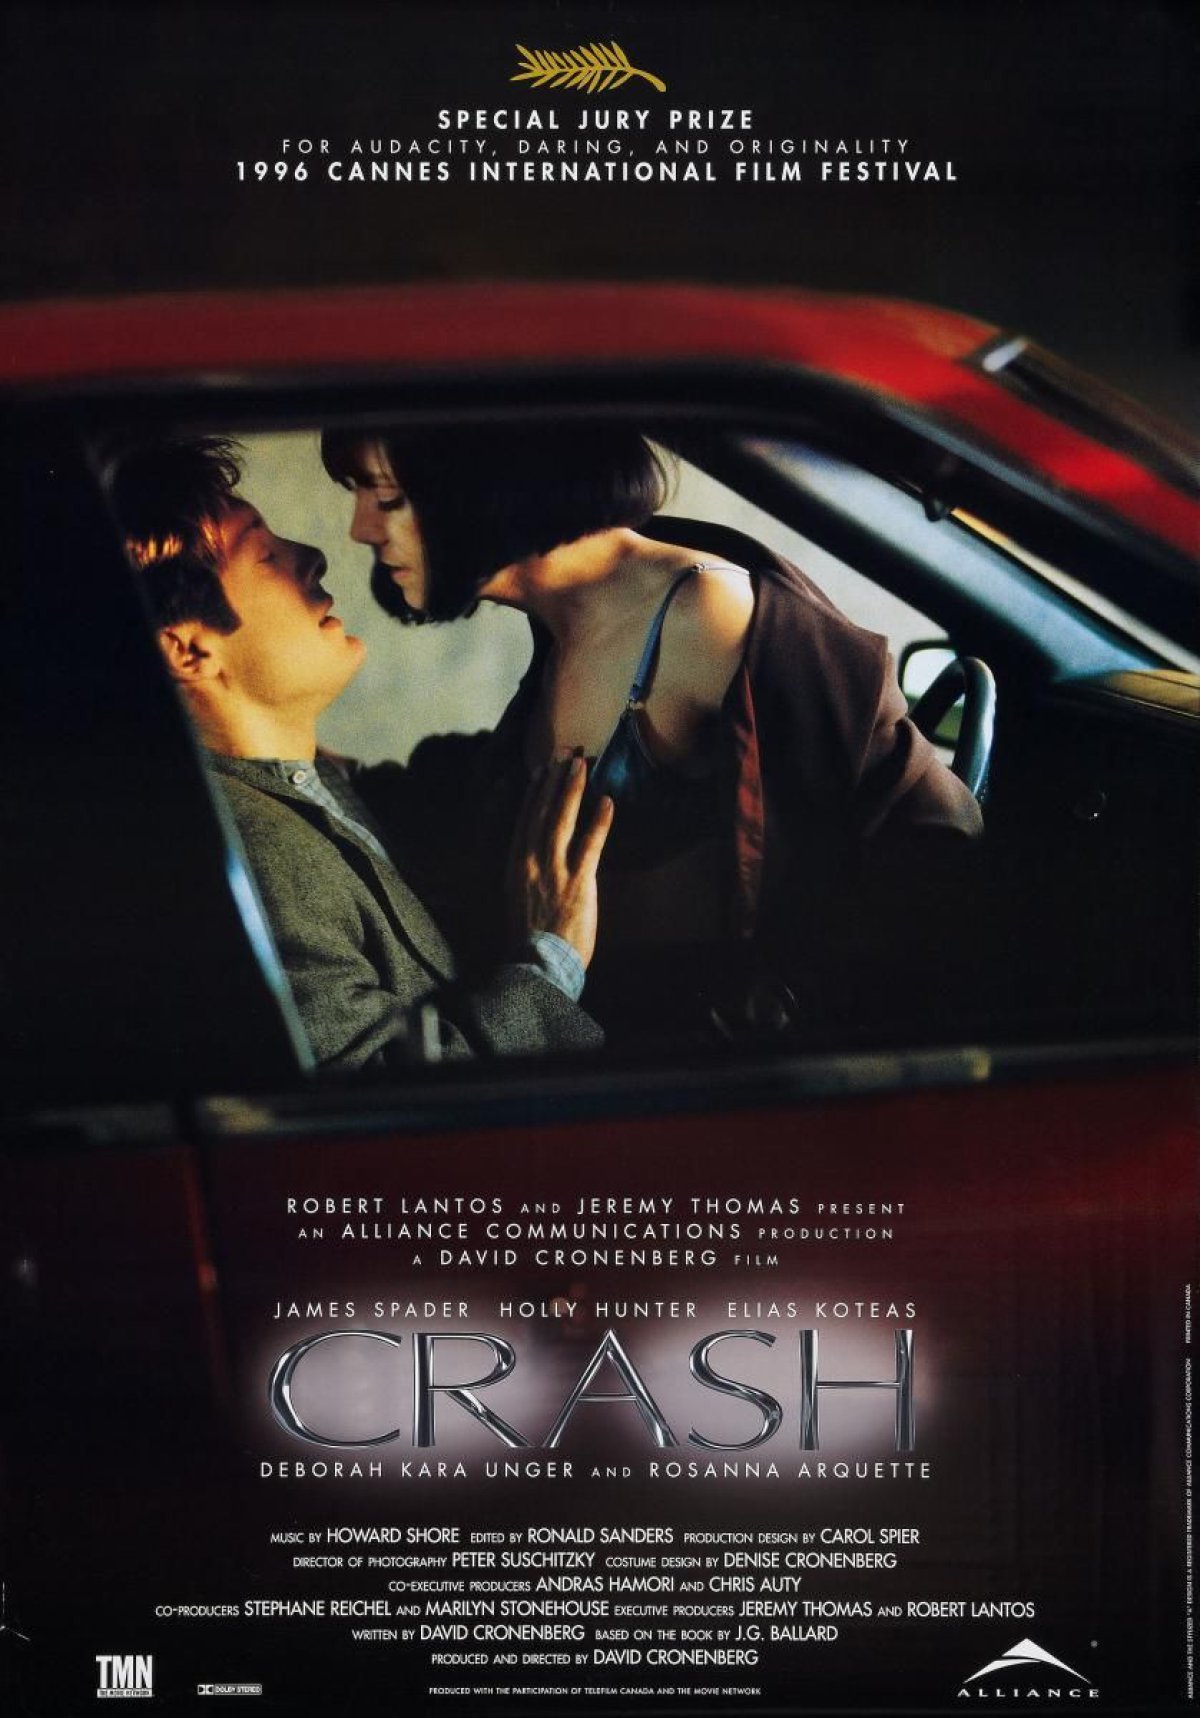 Crash (1996)